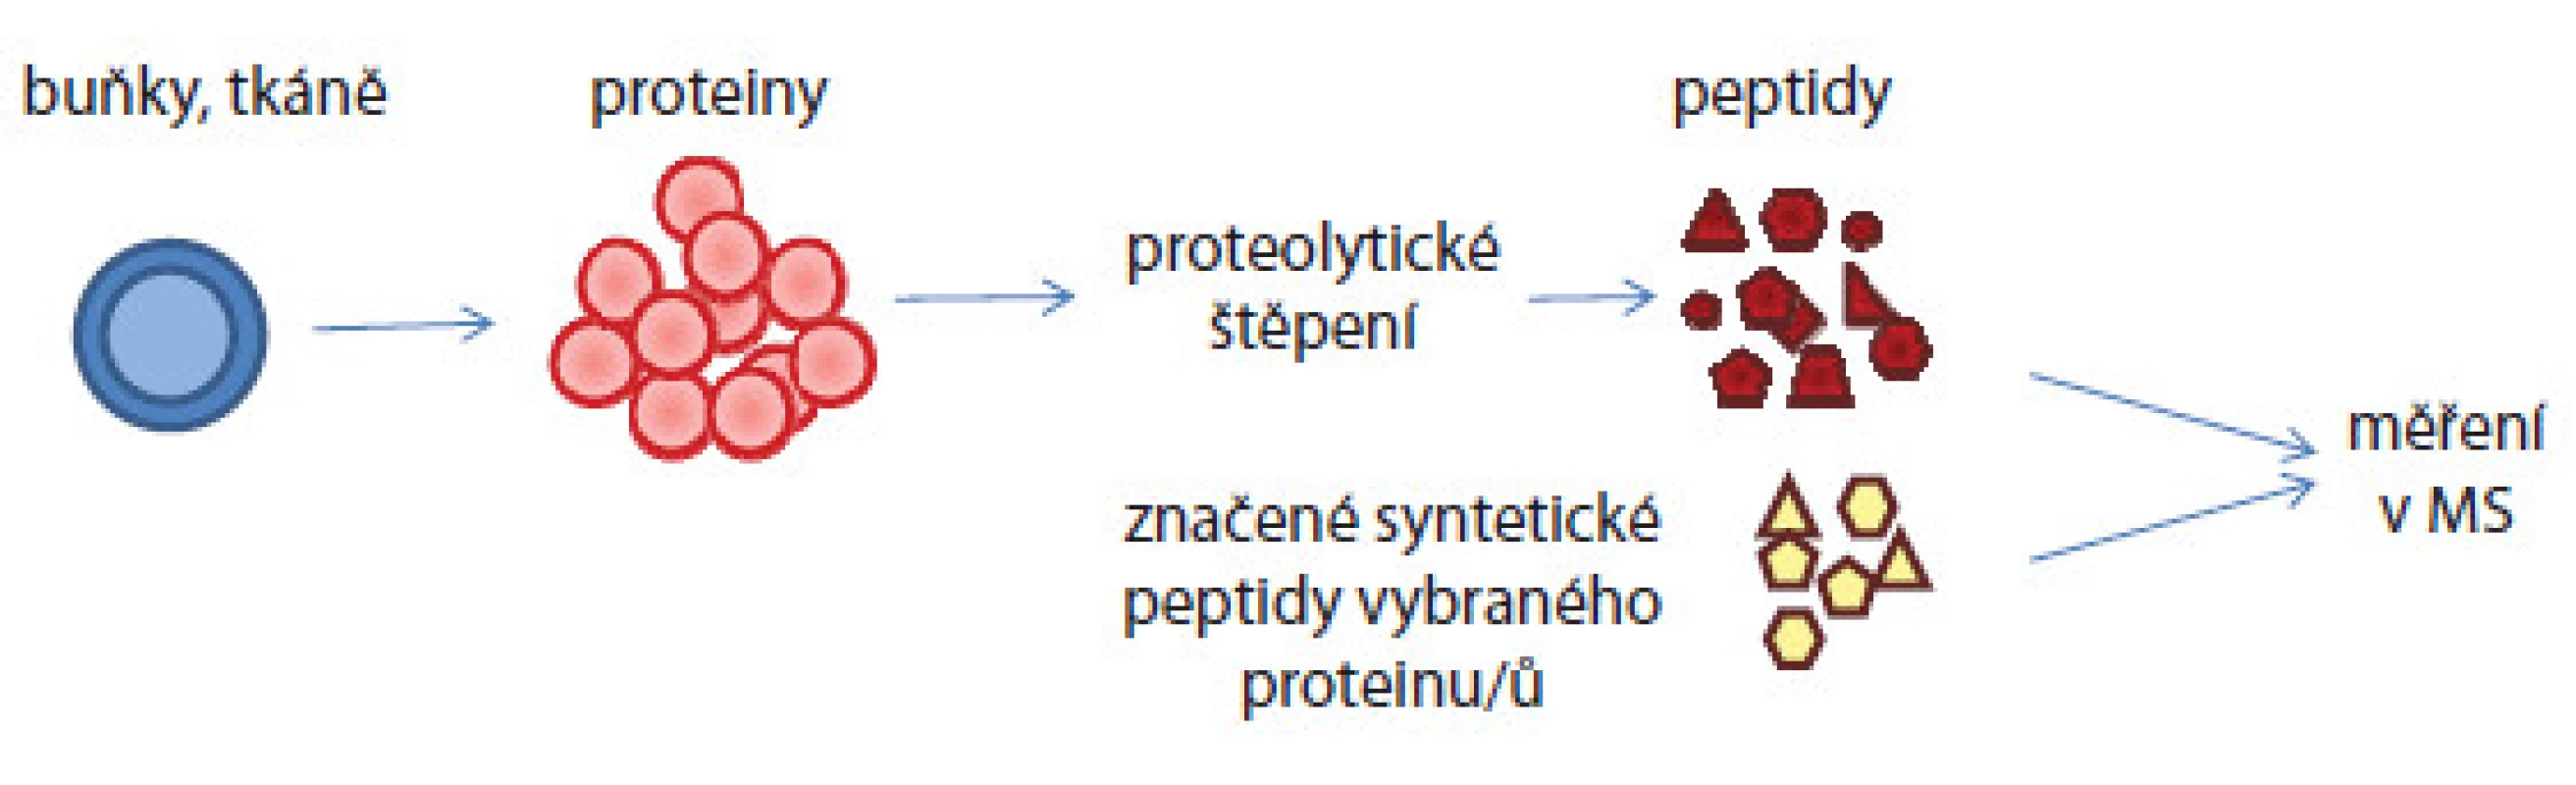 Schematické znázornění absolutní kvantifikace proteinů v komplexním biologickém vzorku.
Proteiny izolované ze vzorku jsou proteolyticky štěpeny enzymem na peptidy. Do peptidové směsi jsou ve známých koncentracích přidány syntetické značené peptidy a celá směs je pak analyzována hmotnostním spektrometrem. Porovnáním intenzit píků syntetického a nativního peptidu je pak vypočítána koncentrace nativního peptidu.